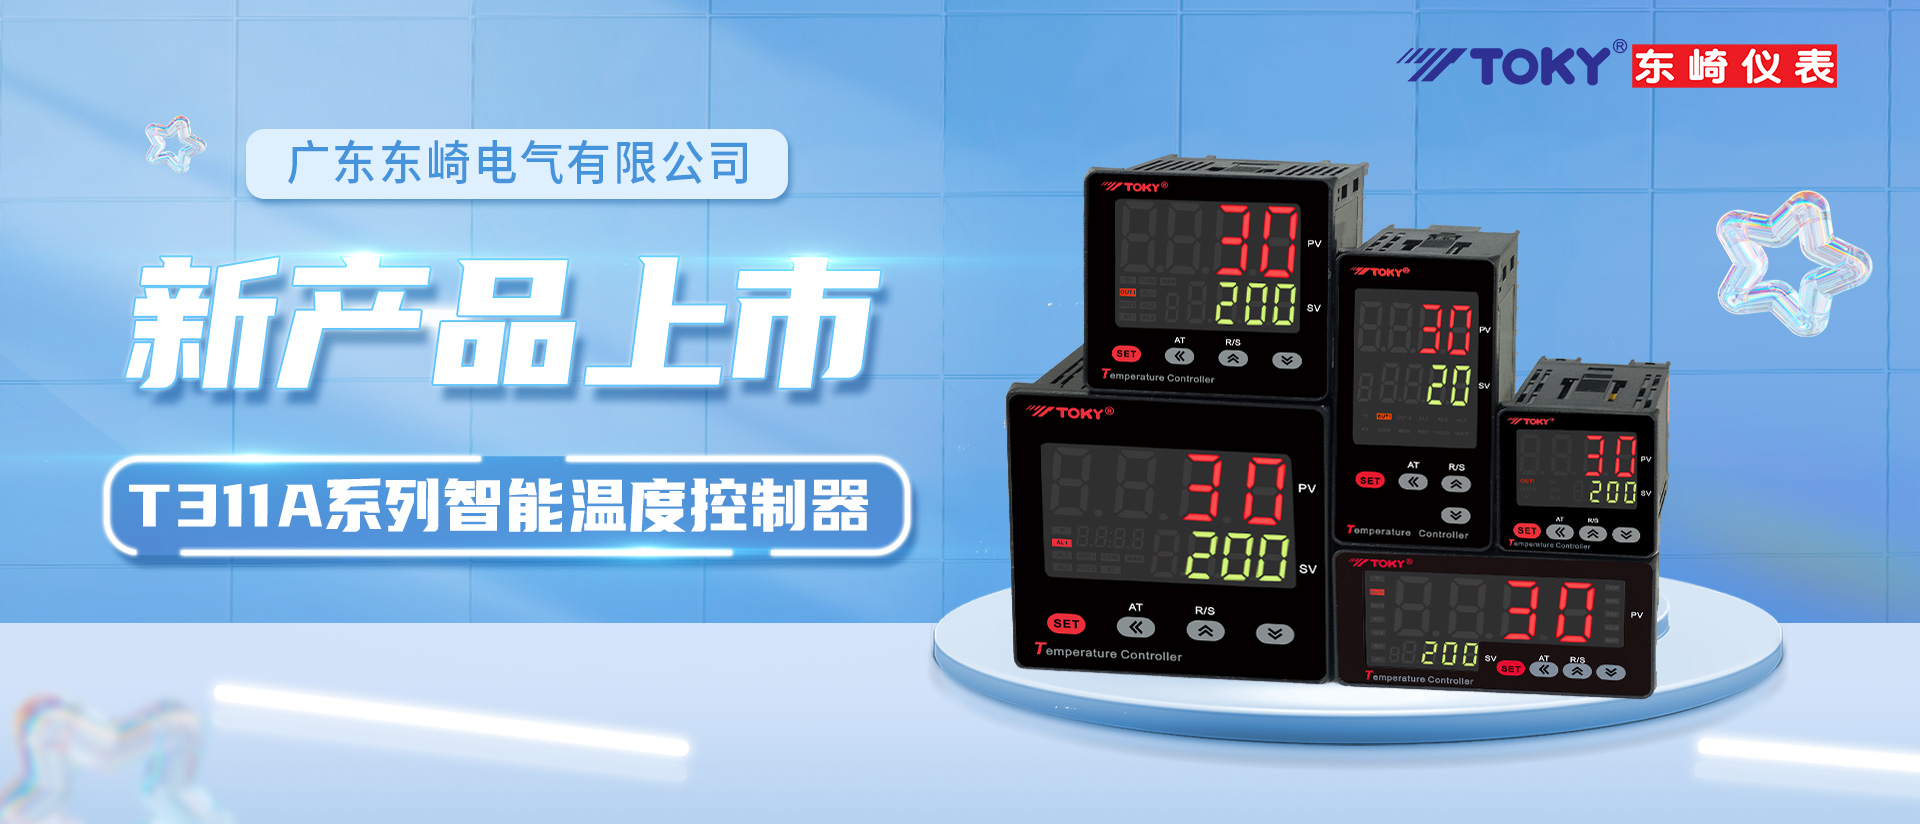 【新品上市】T311A系列智能温度控制器全新上市